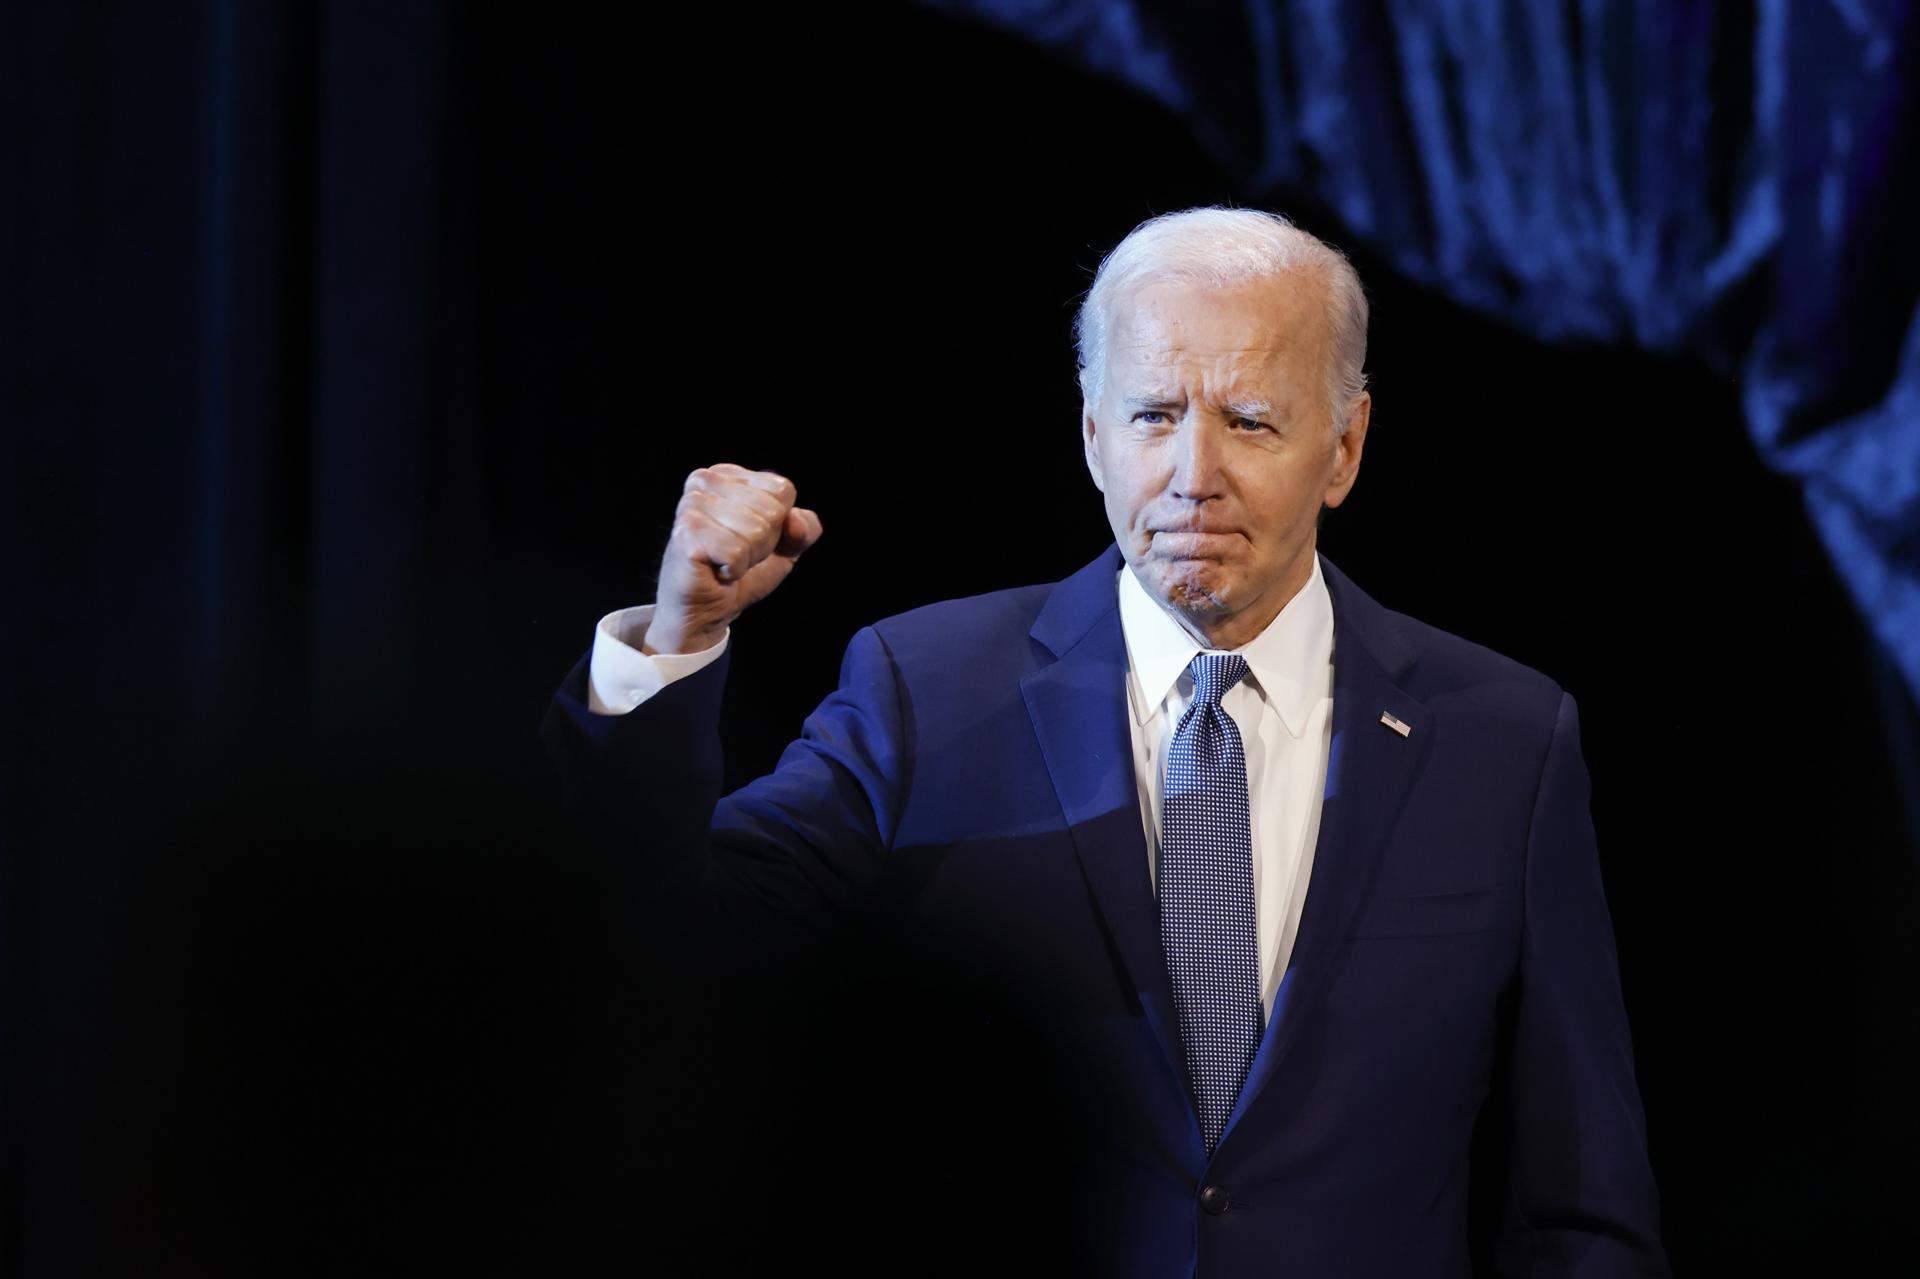 Aumenta la presión sobre Joe Biden para que renuncie como candidato demócrata